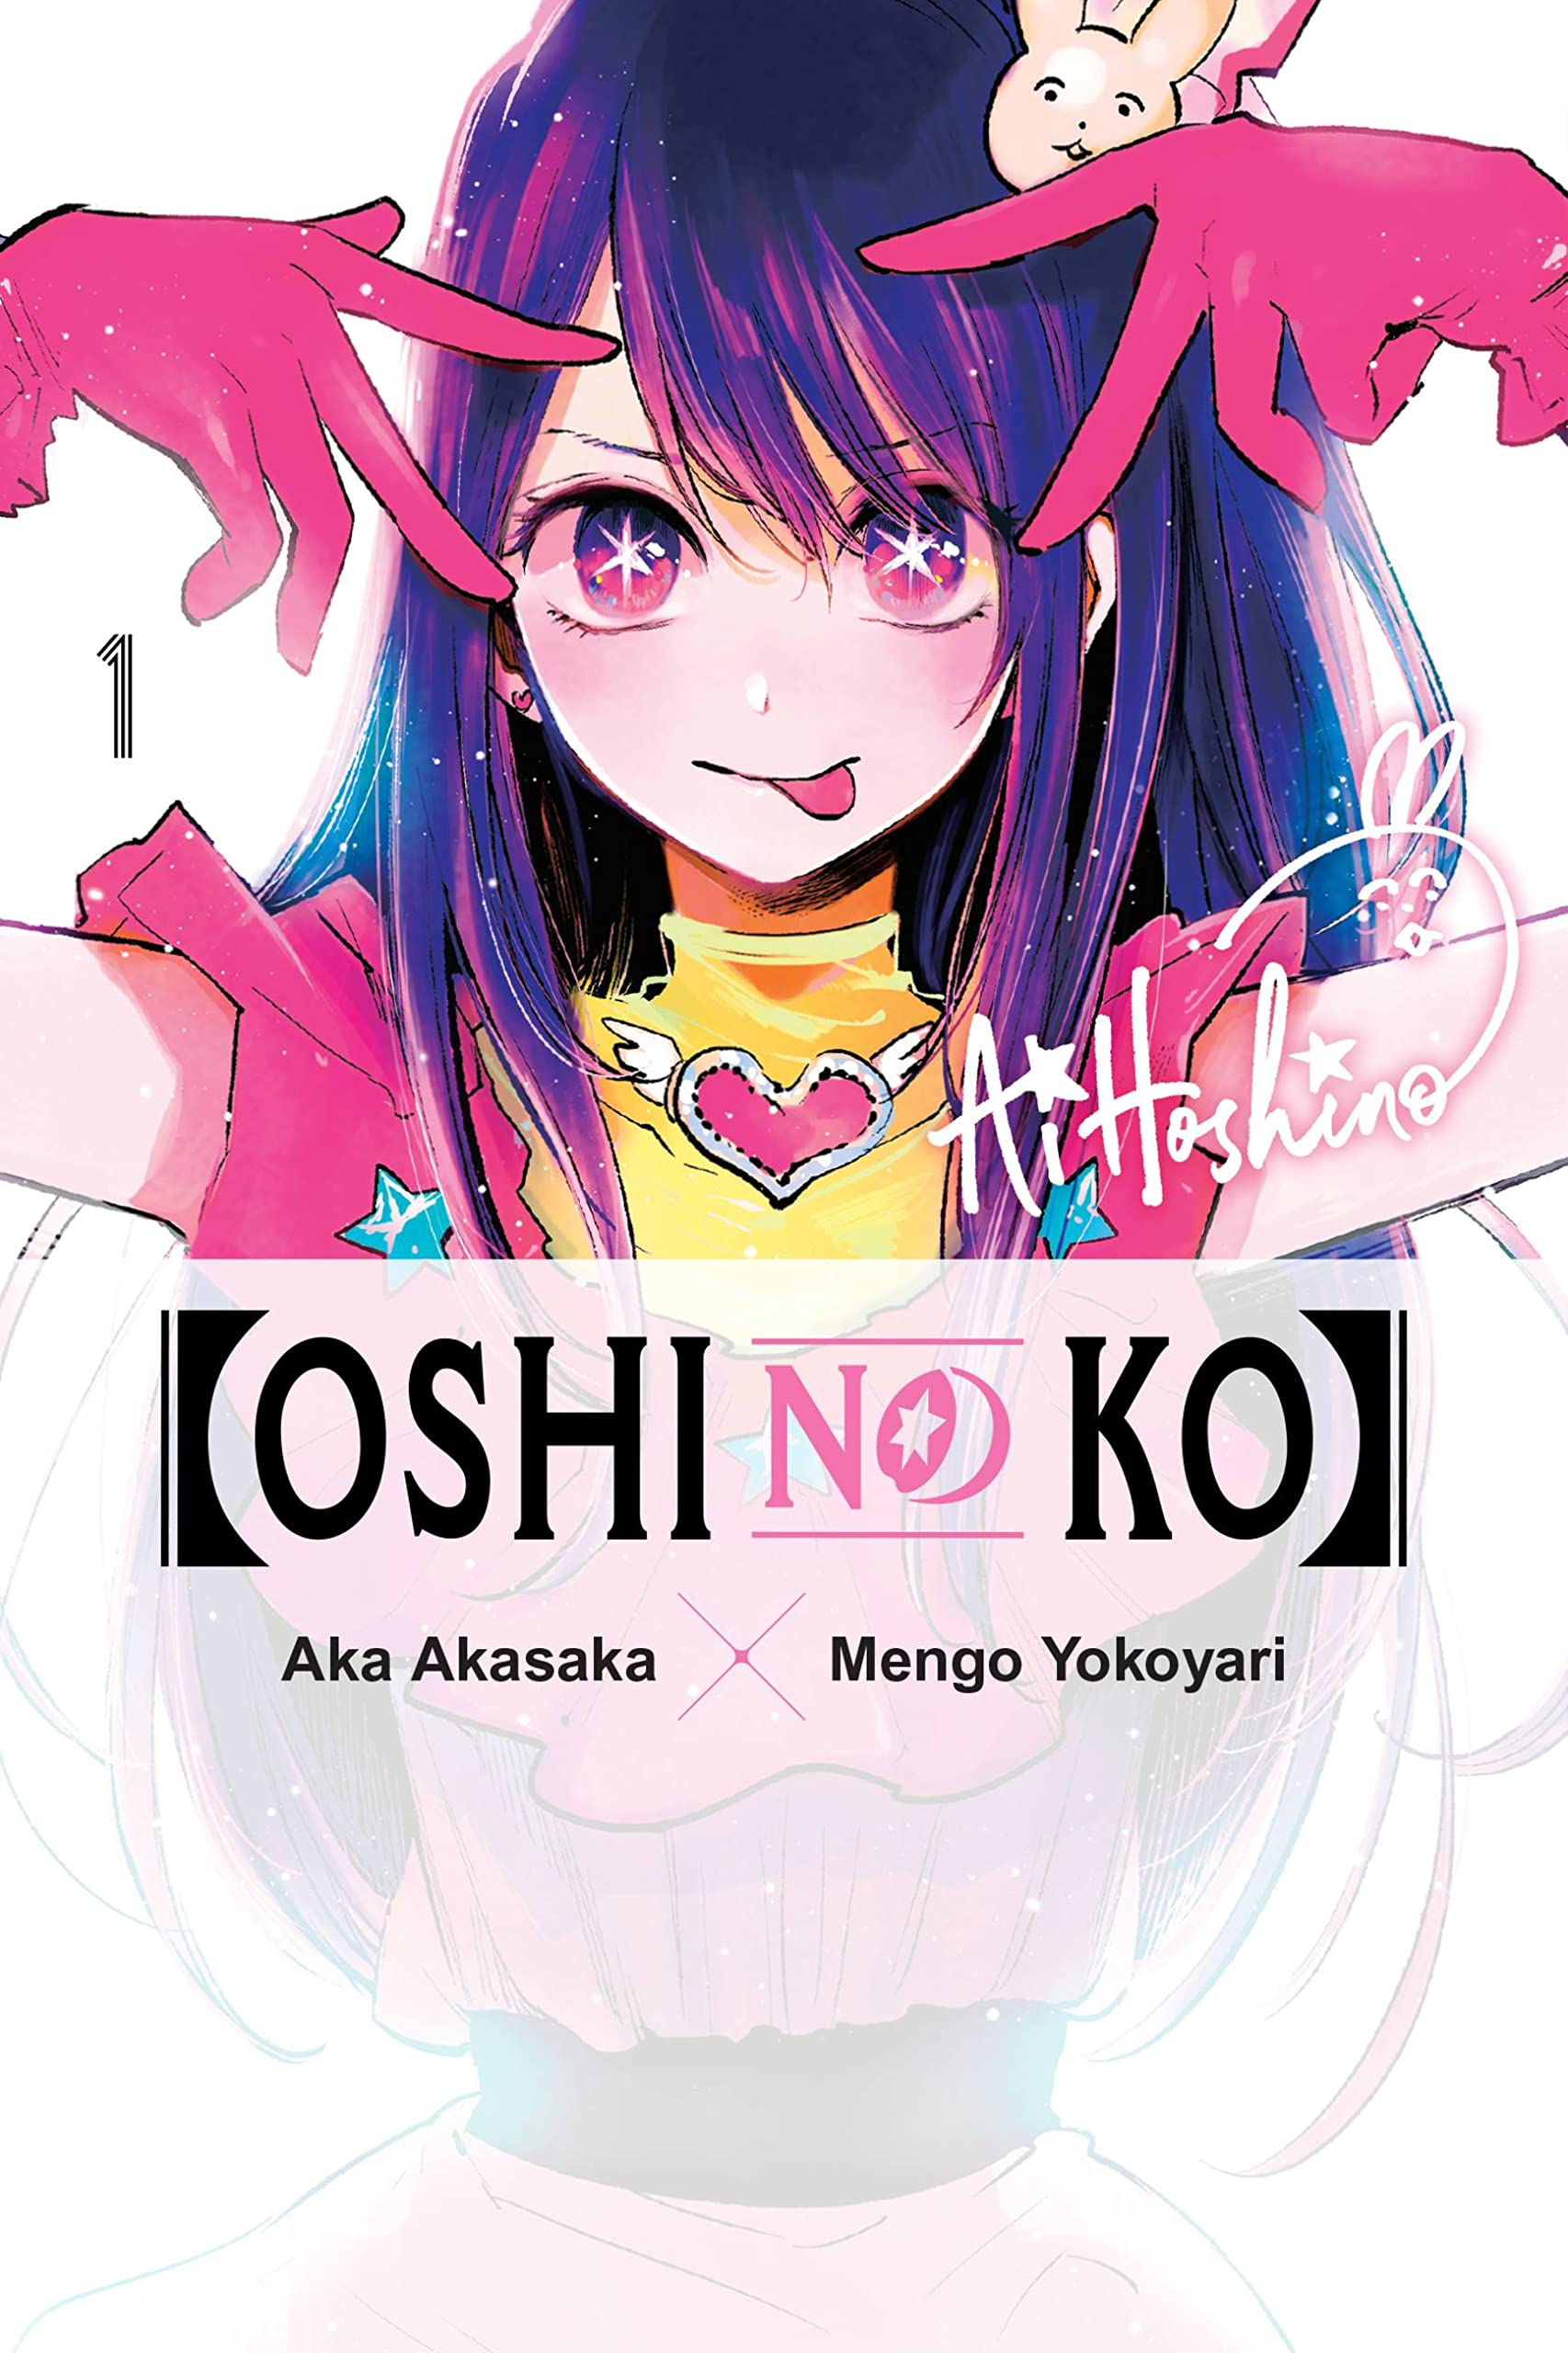 Oshi no ko mangaka